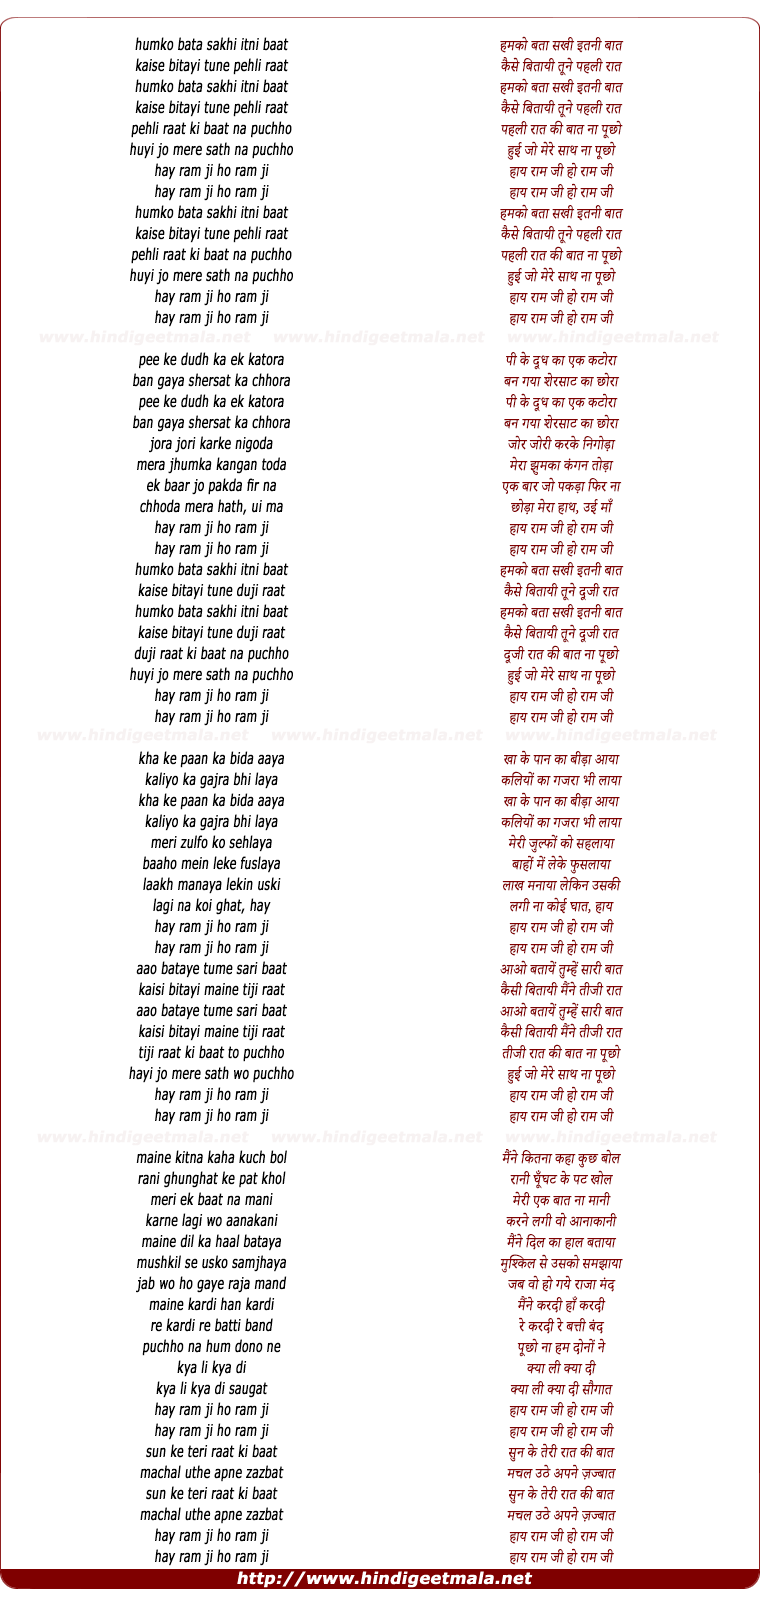 lyrics of song Hamko Bata Sakhi Itni Baat (Hai Raam Ji)